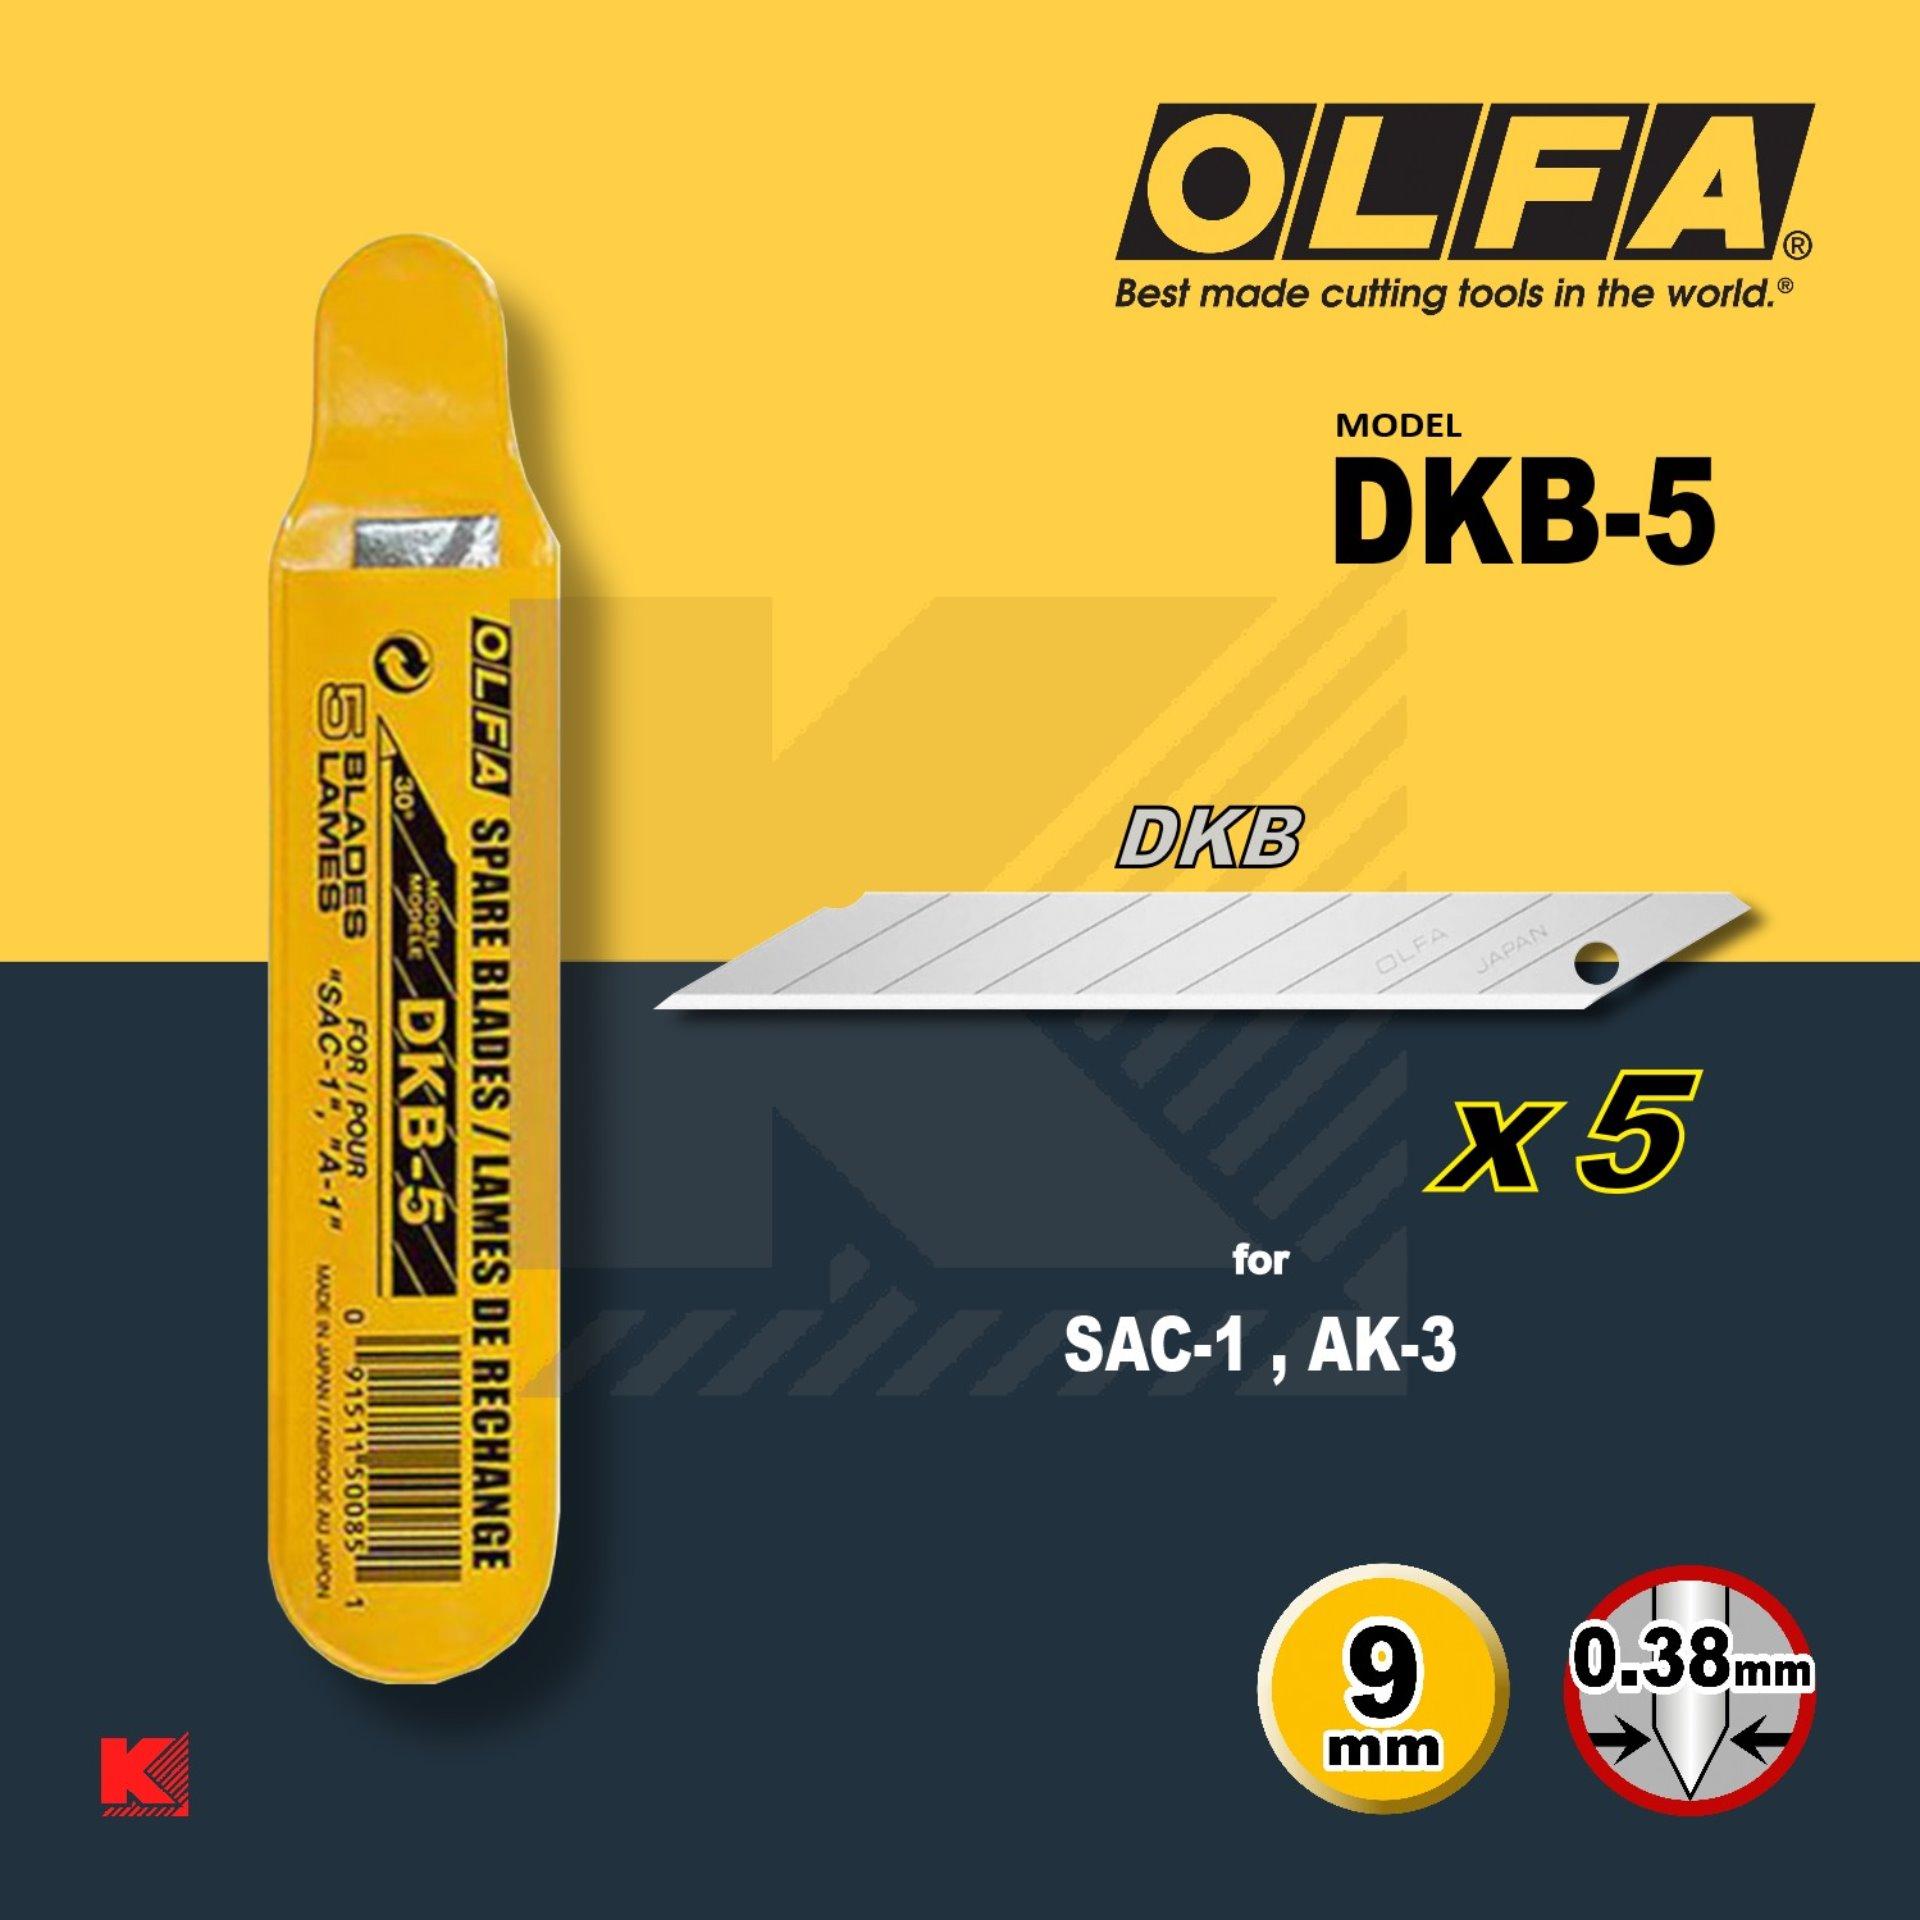 ใบคัตเตอร์ OLFA รุ่น DKB-5 (ใบเล็กมาตราฐาน ปลายแหลม 30 องศา)